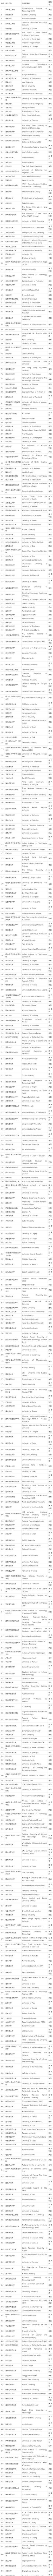 2021世界大学排名清华大学打破了去年创下的中国大学的最高排位